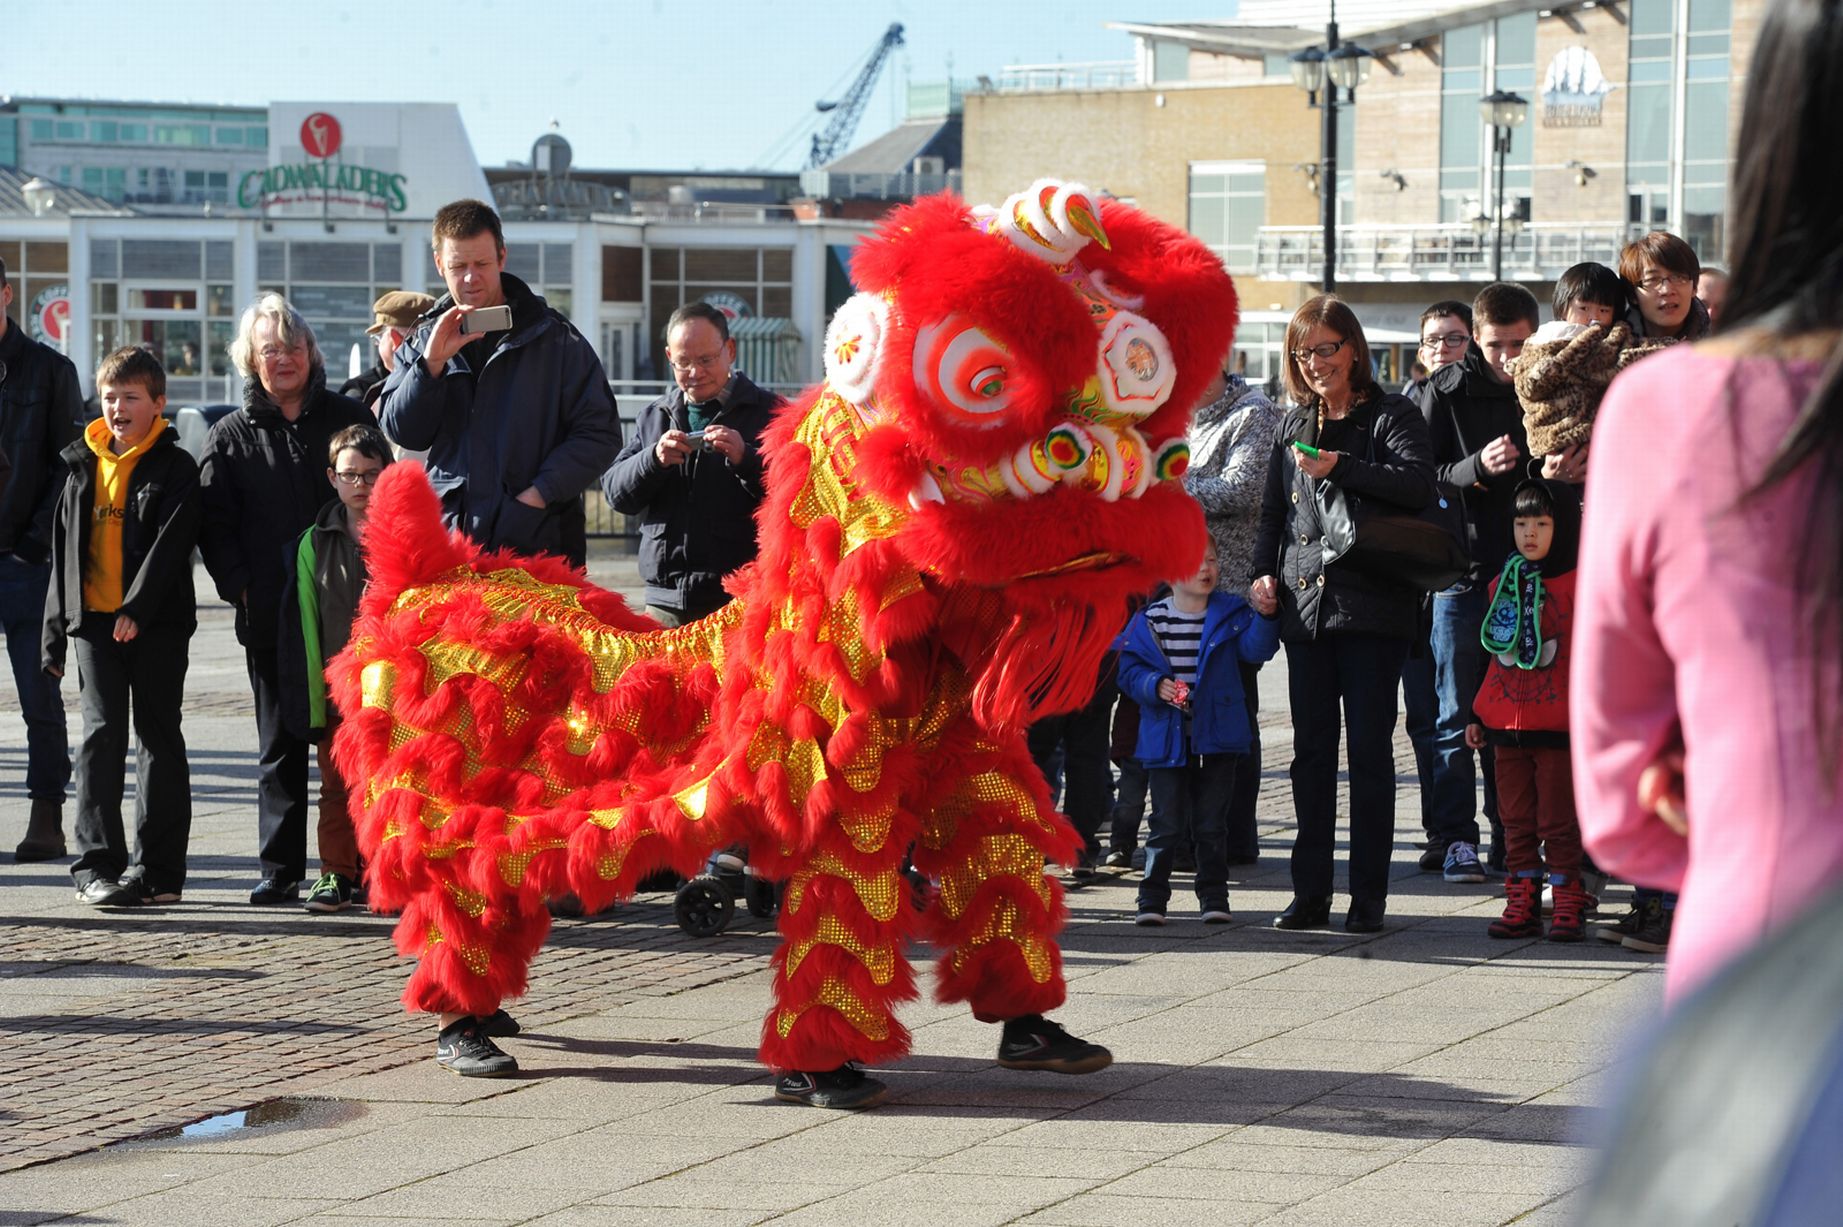 Танец дракона на праздновании китайского Нового года в столице Уэльса. Фото: walesonline.co.uk